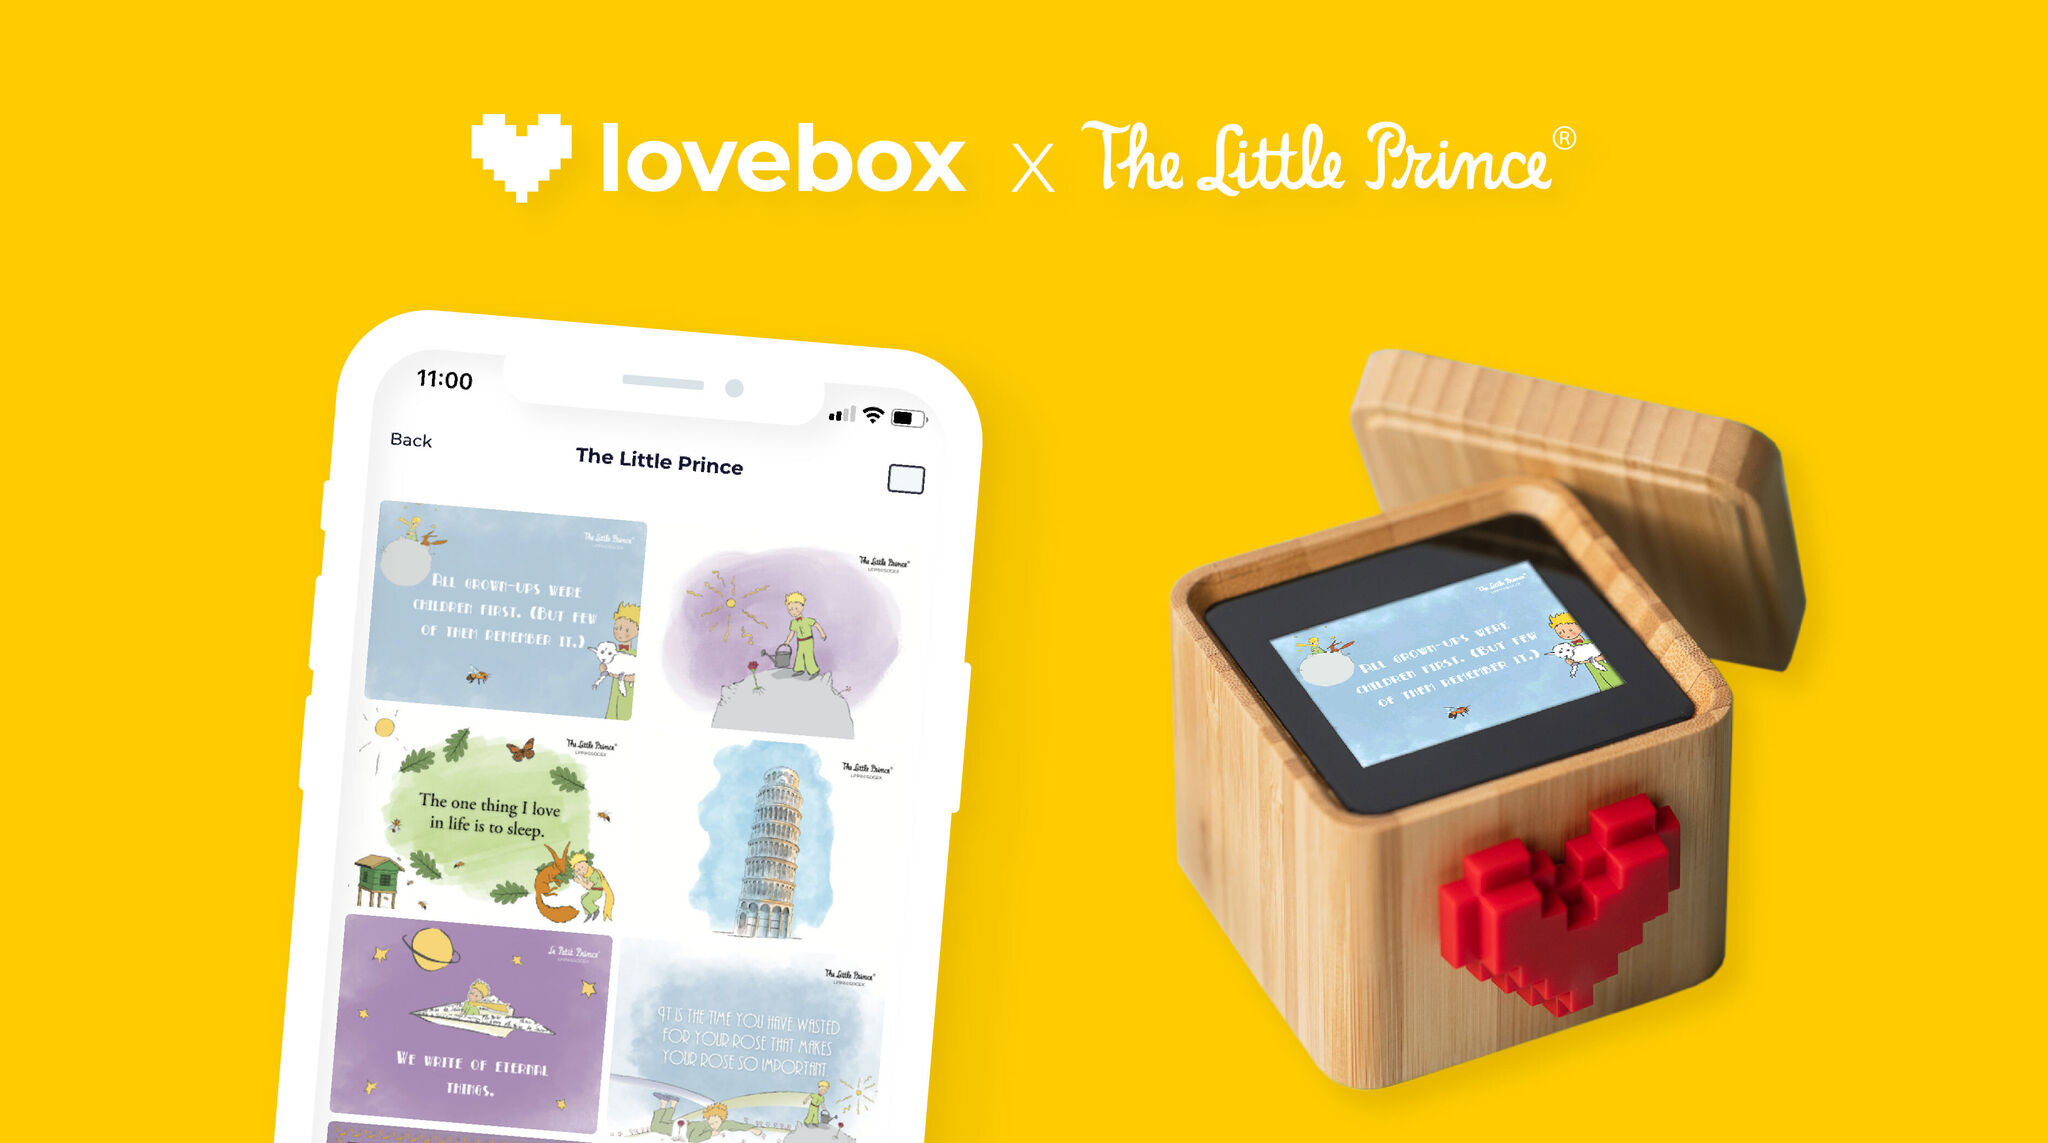 Du nouveaux contenus Le Petit Prince dans la Lovebox